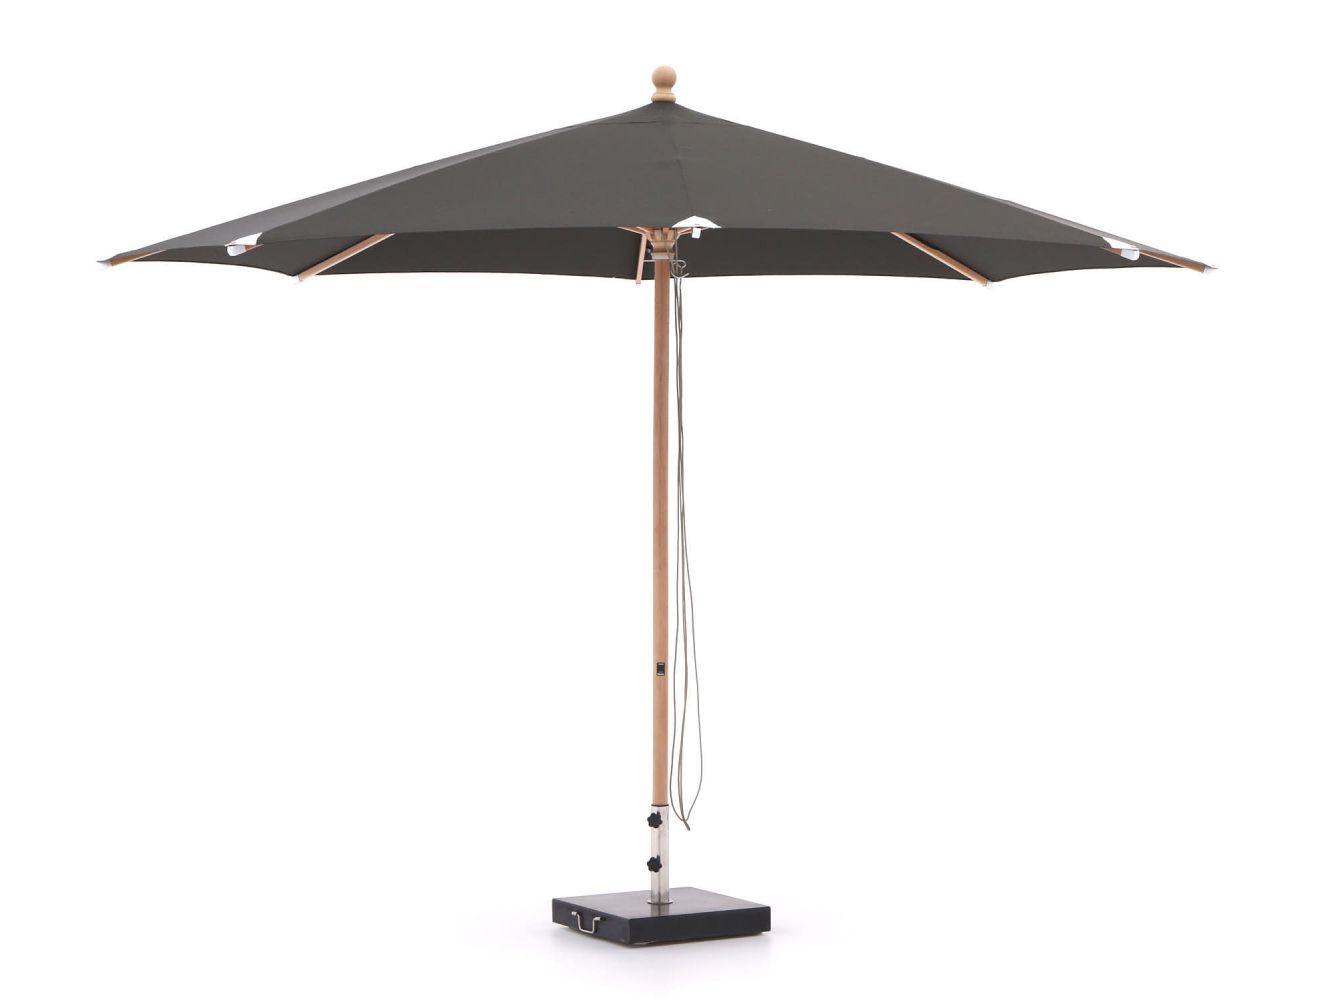 Glatz Piazzino parasol ø 350cm